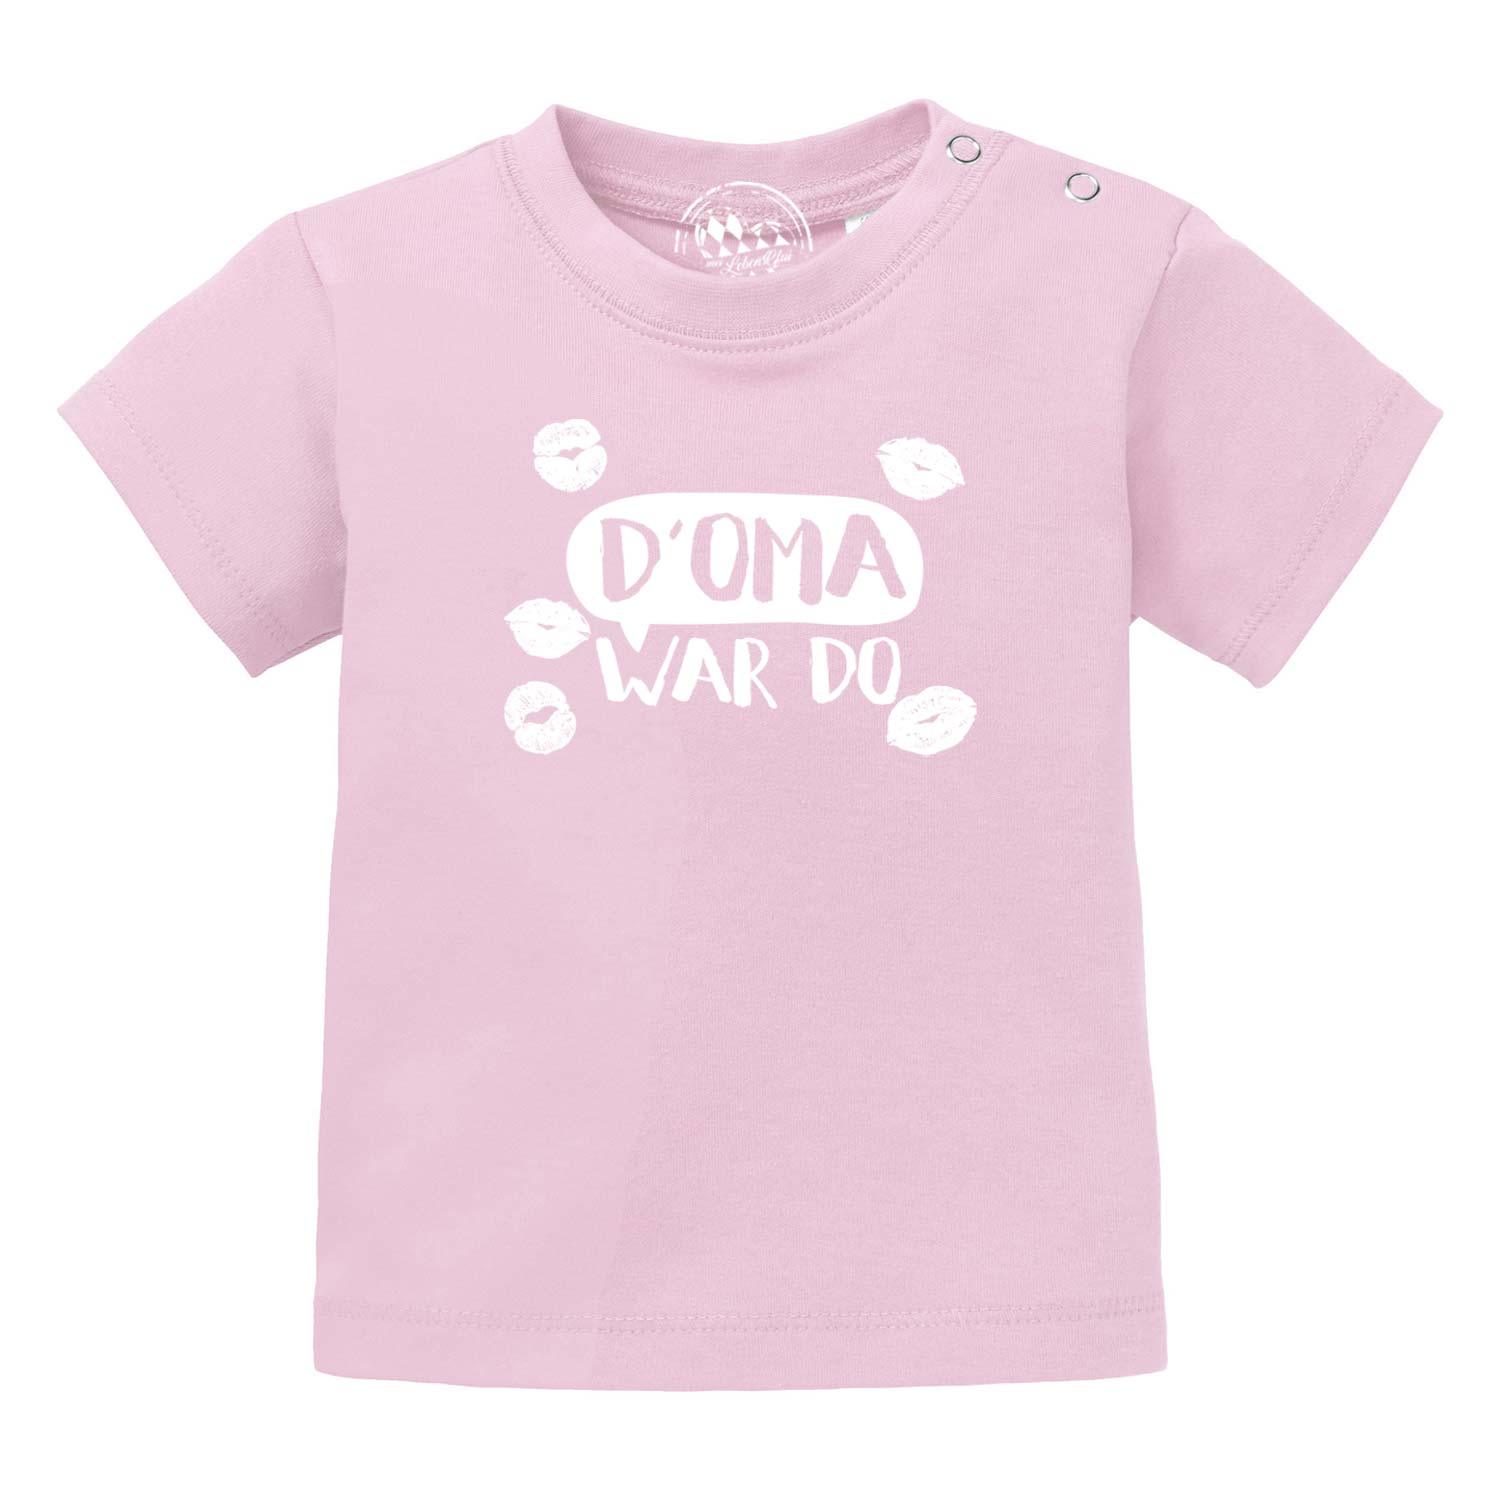 Baby T-Shirt "D' Oma war do…" - bavariashop - mei LebensGfui